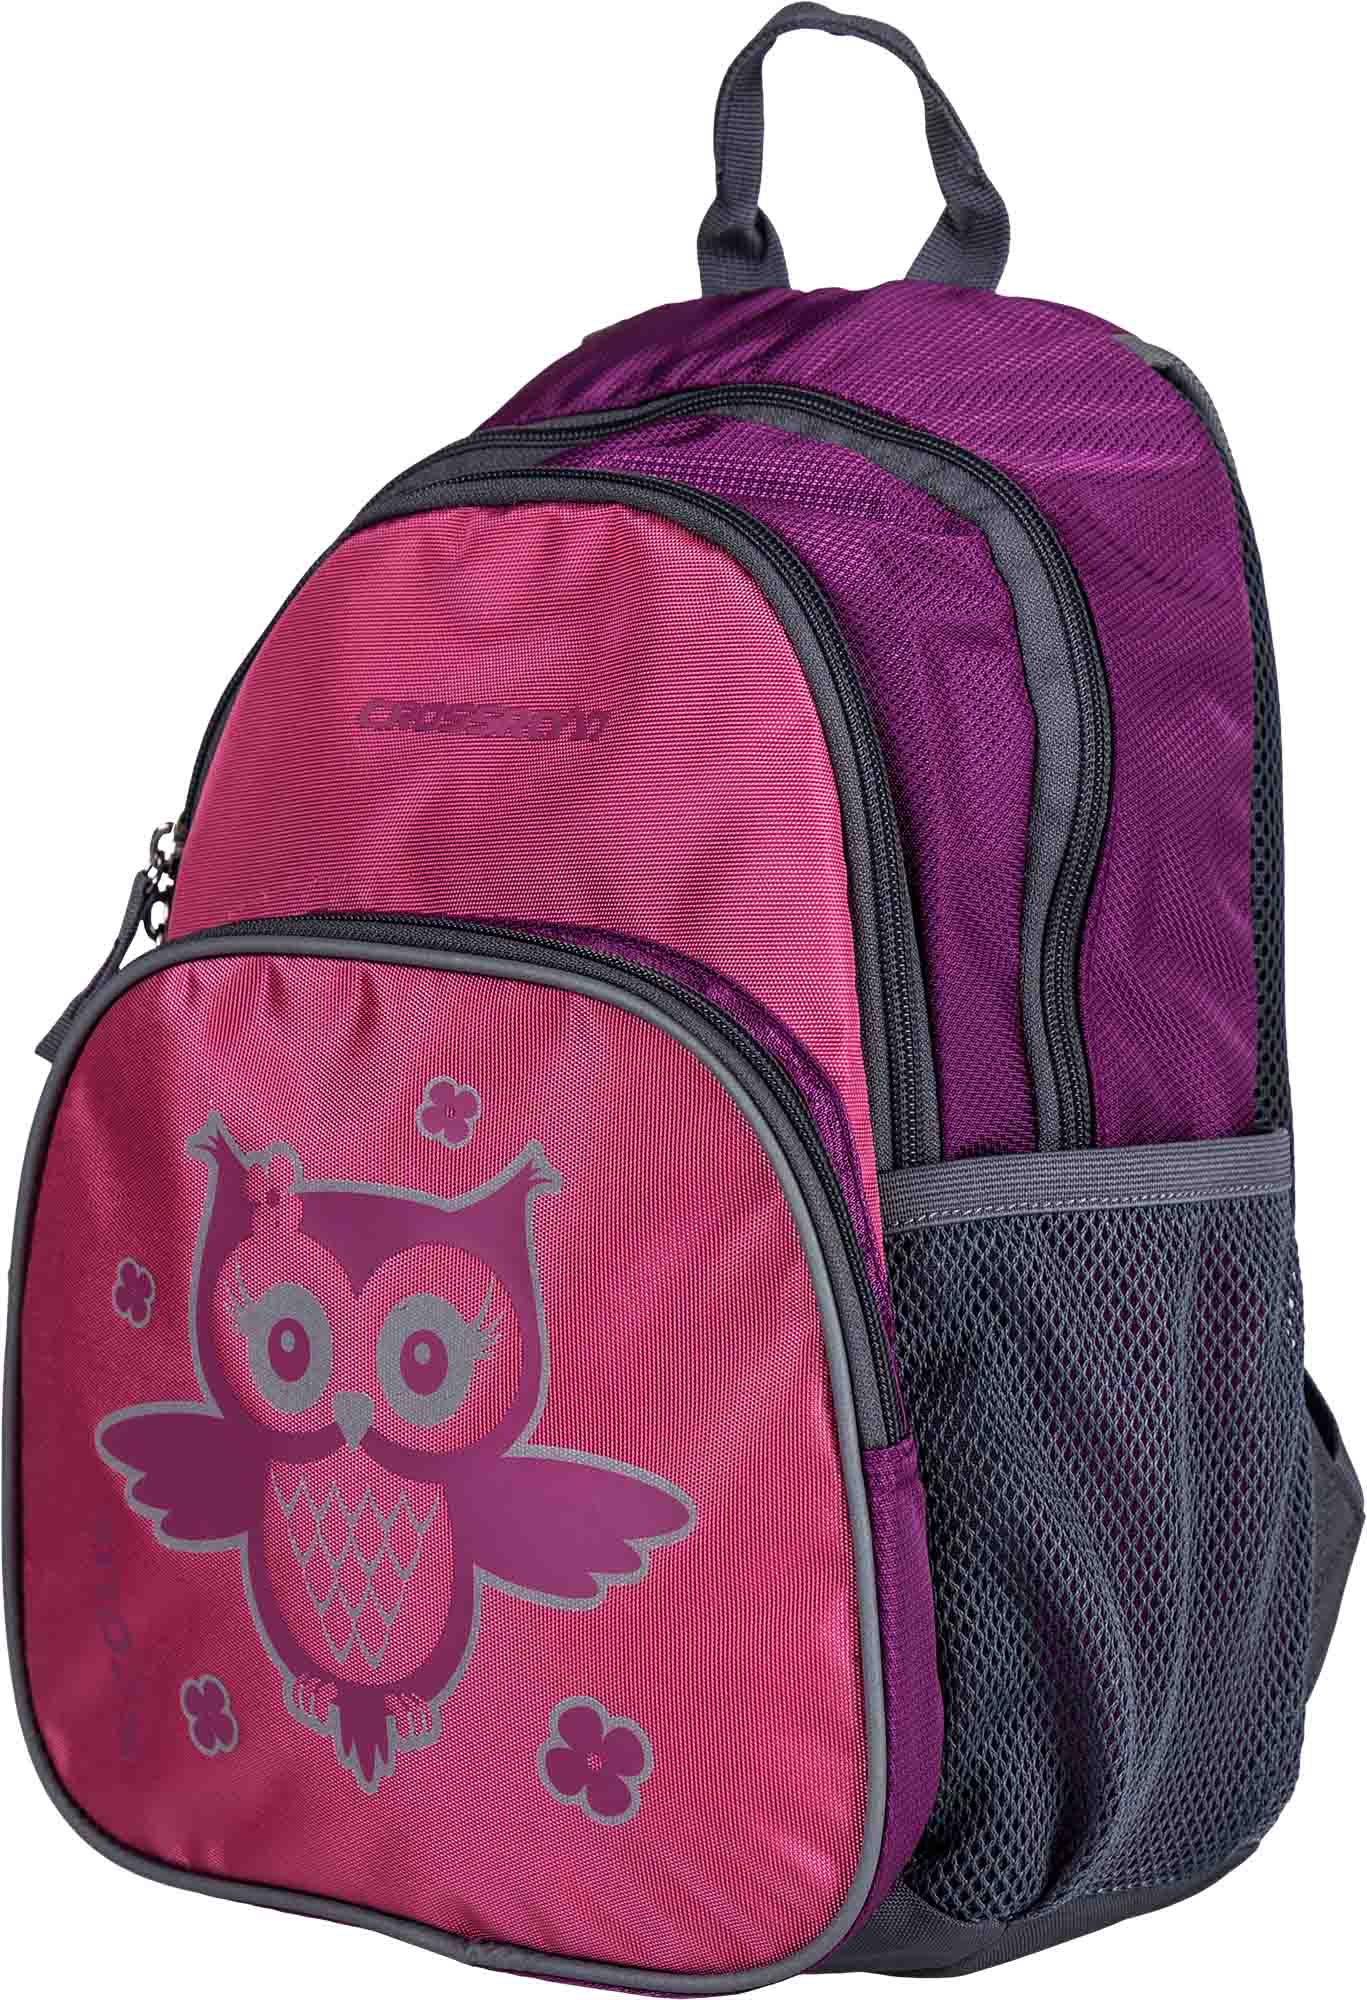 Universal children’s backpack